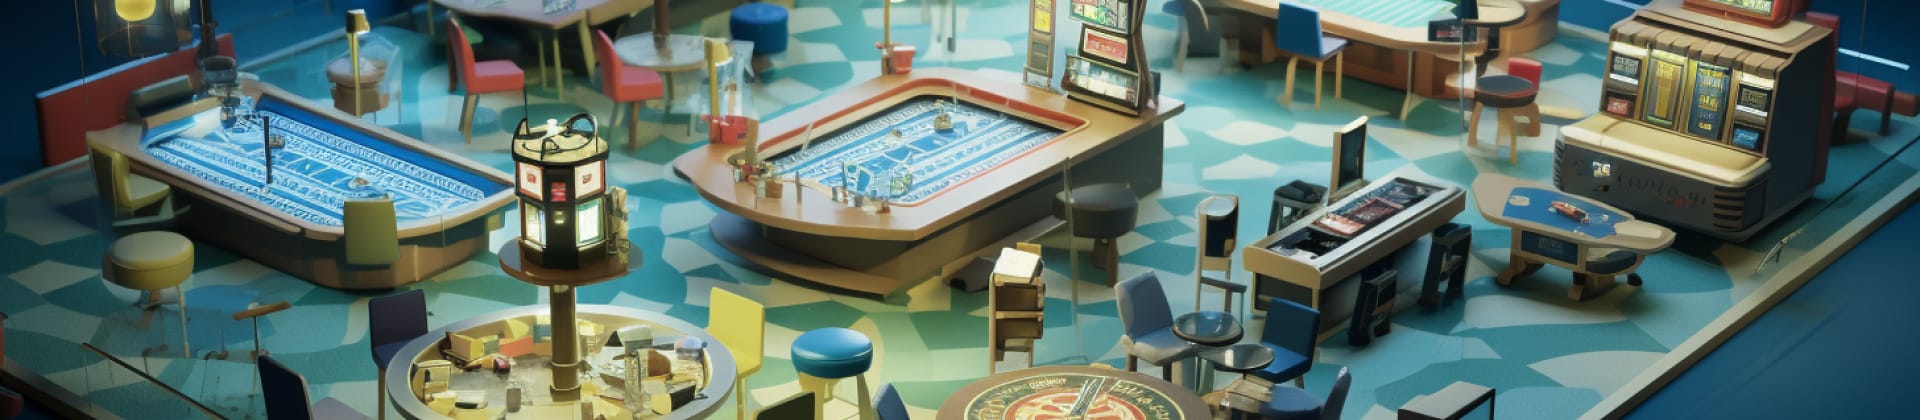 Leta efter casinon utan svenskt licens som har kända betalningsmetoder